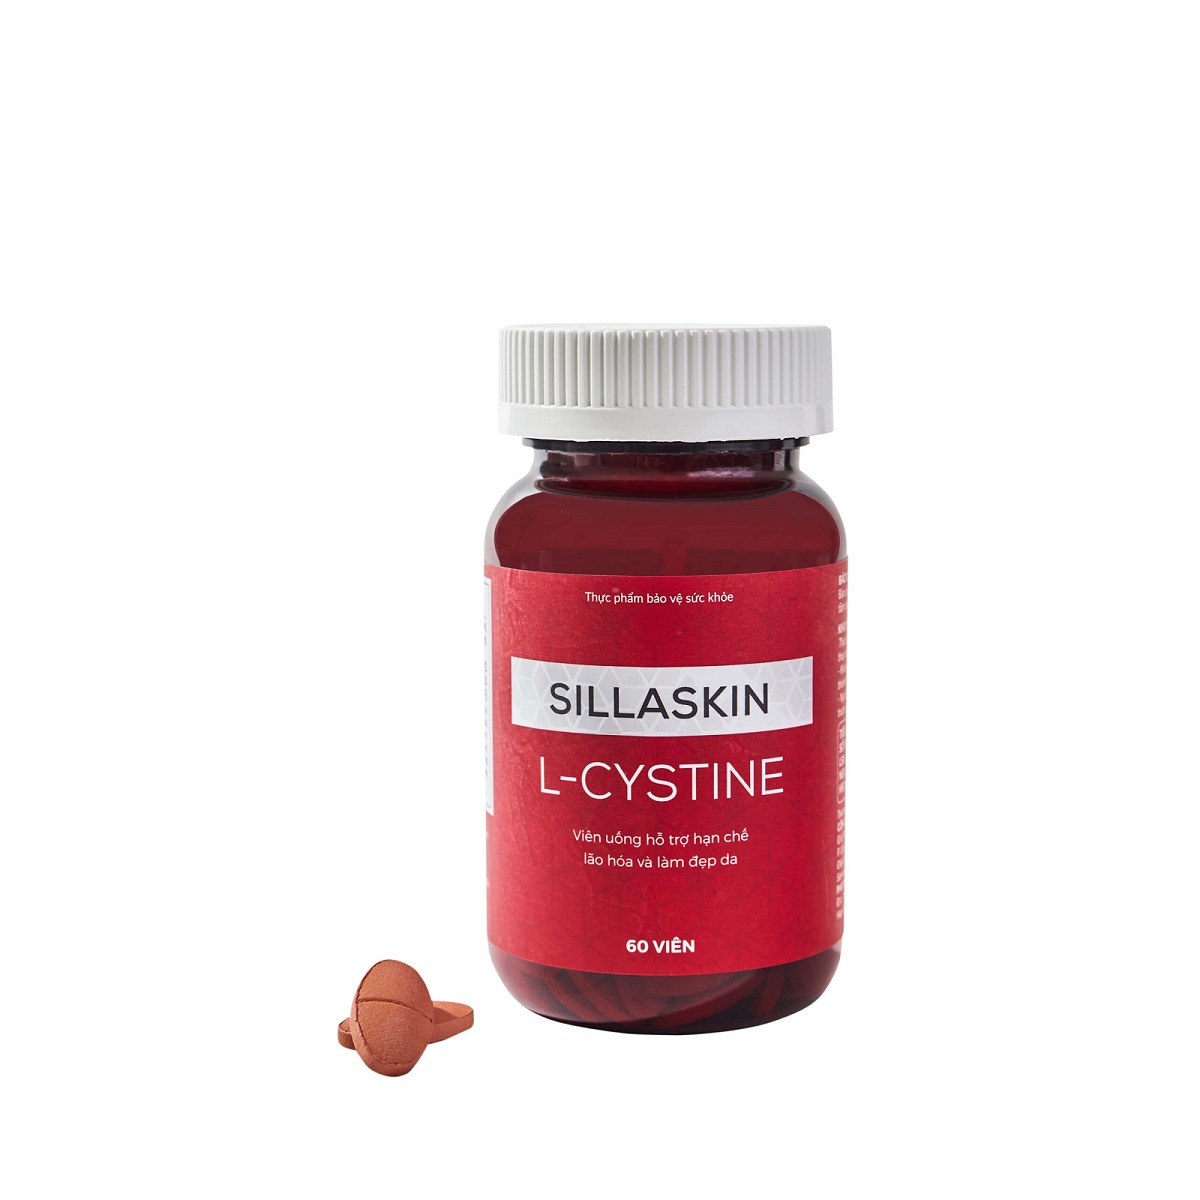 Viên uống L-cystine loại nào tốt?